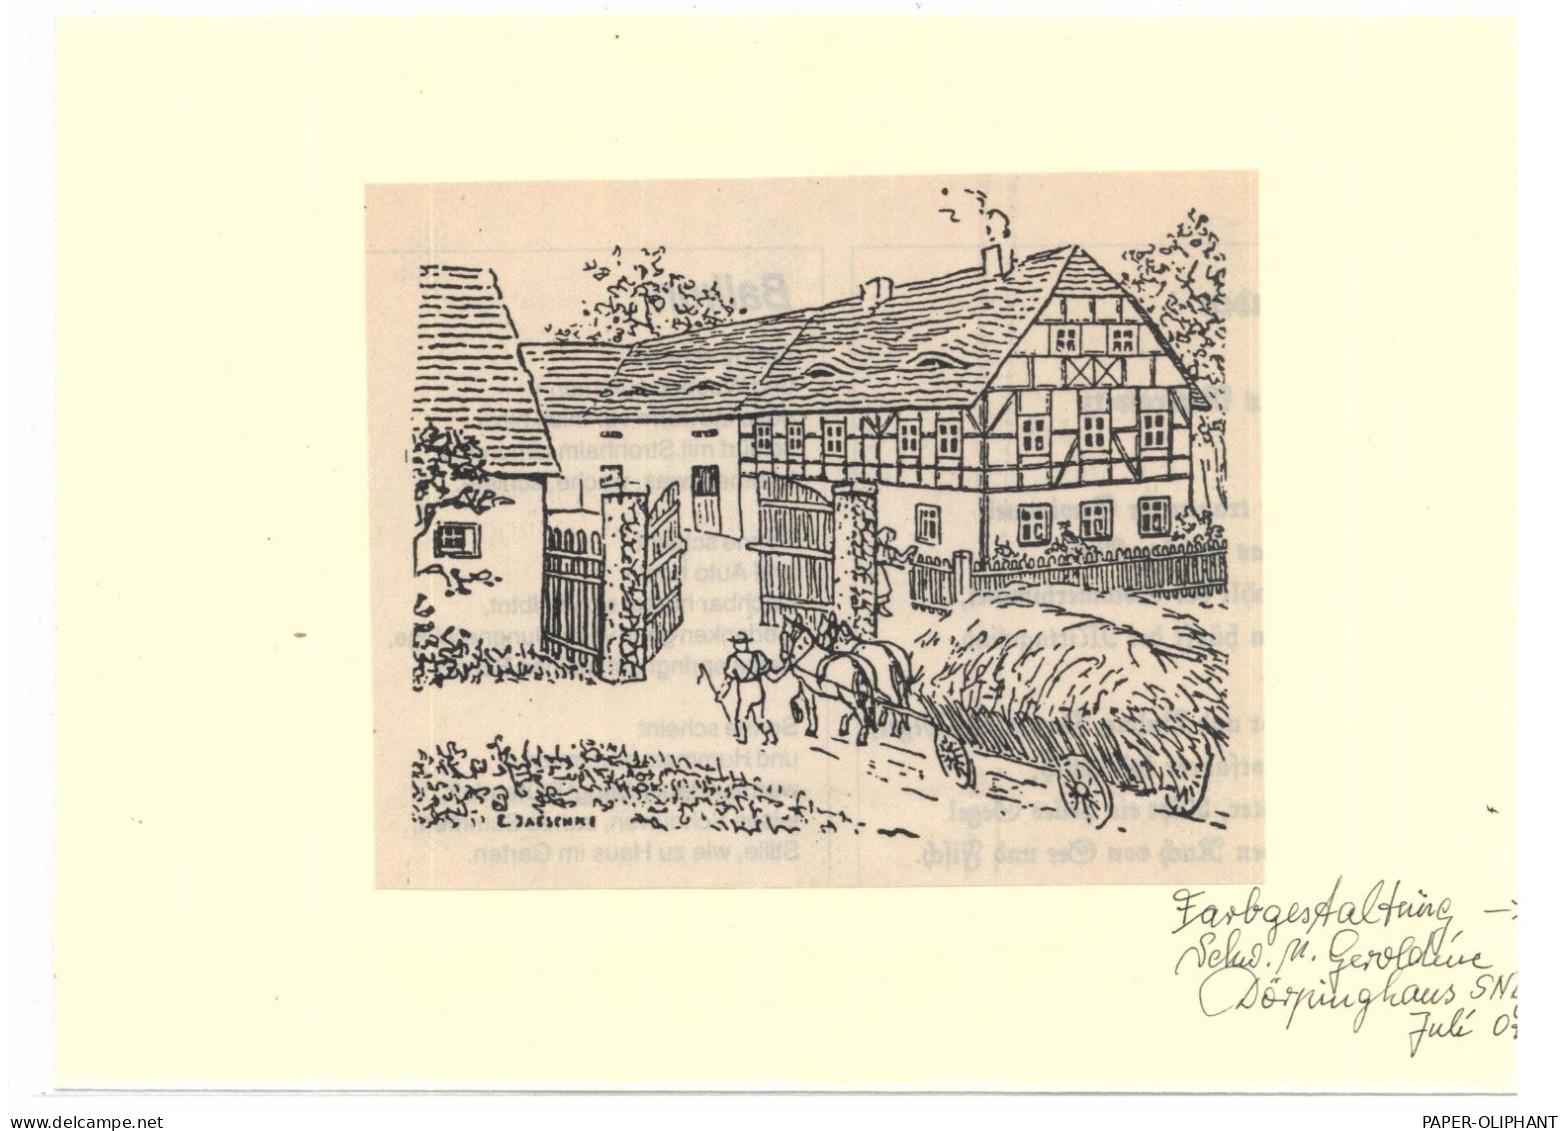 SCHLESIEN - Bauernhof, Zeichnung E.Jaesenne S/w Und Coloriert, 14 X 11,5 Cm - Schlesien